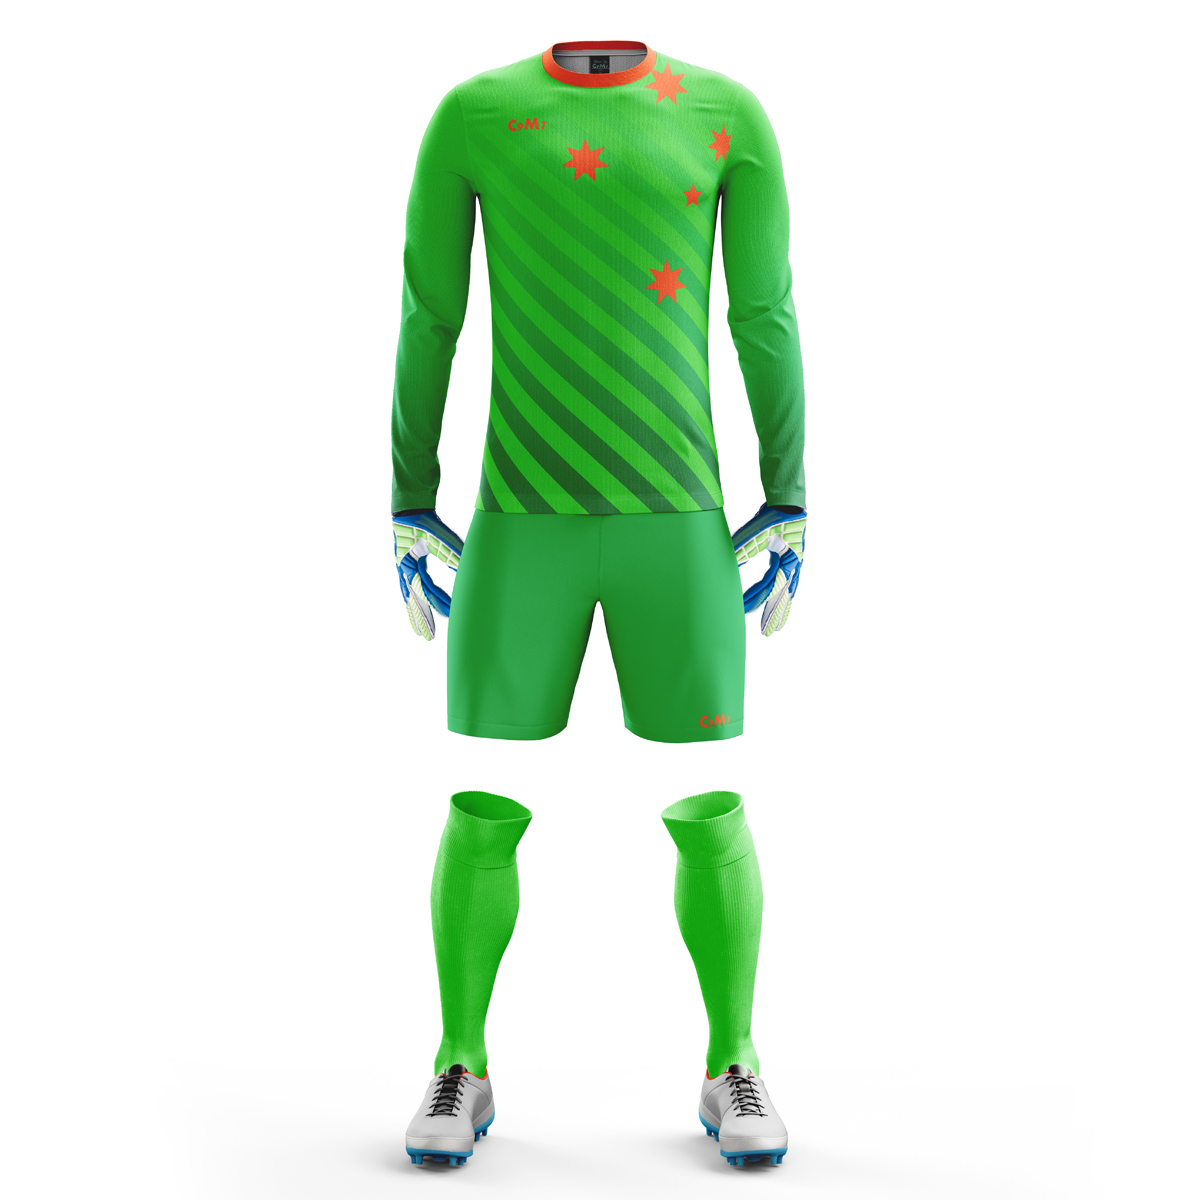 Custom Goalkeeper Kits Australia - A 